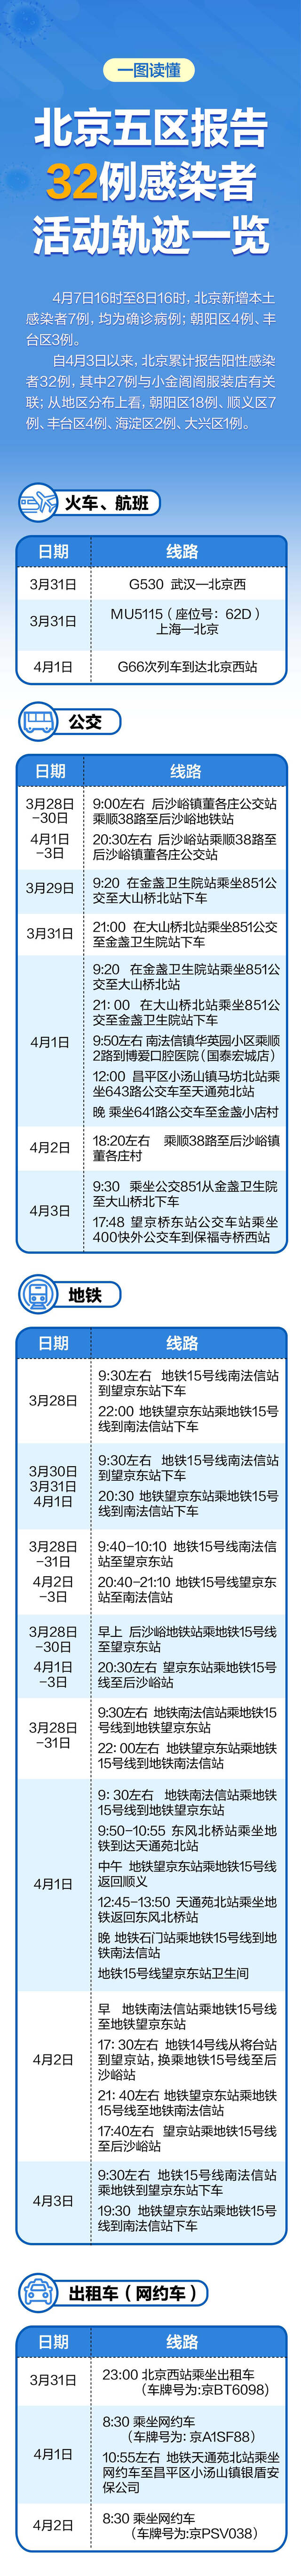 北京五区累计报告32例感染者，涉及场所、地铁、公交一图读懂